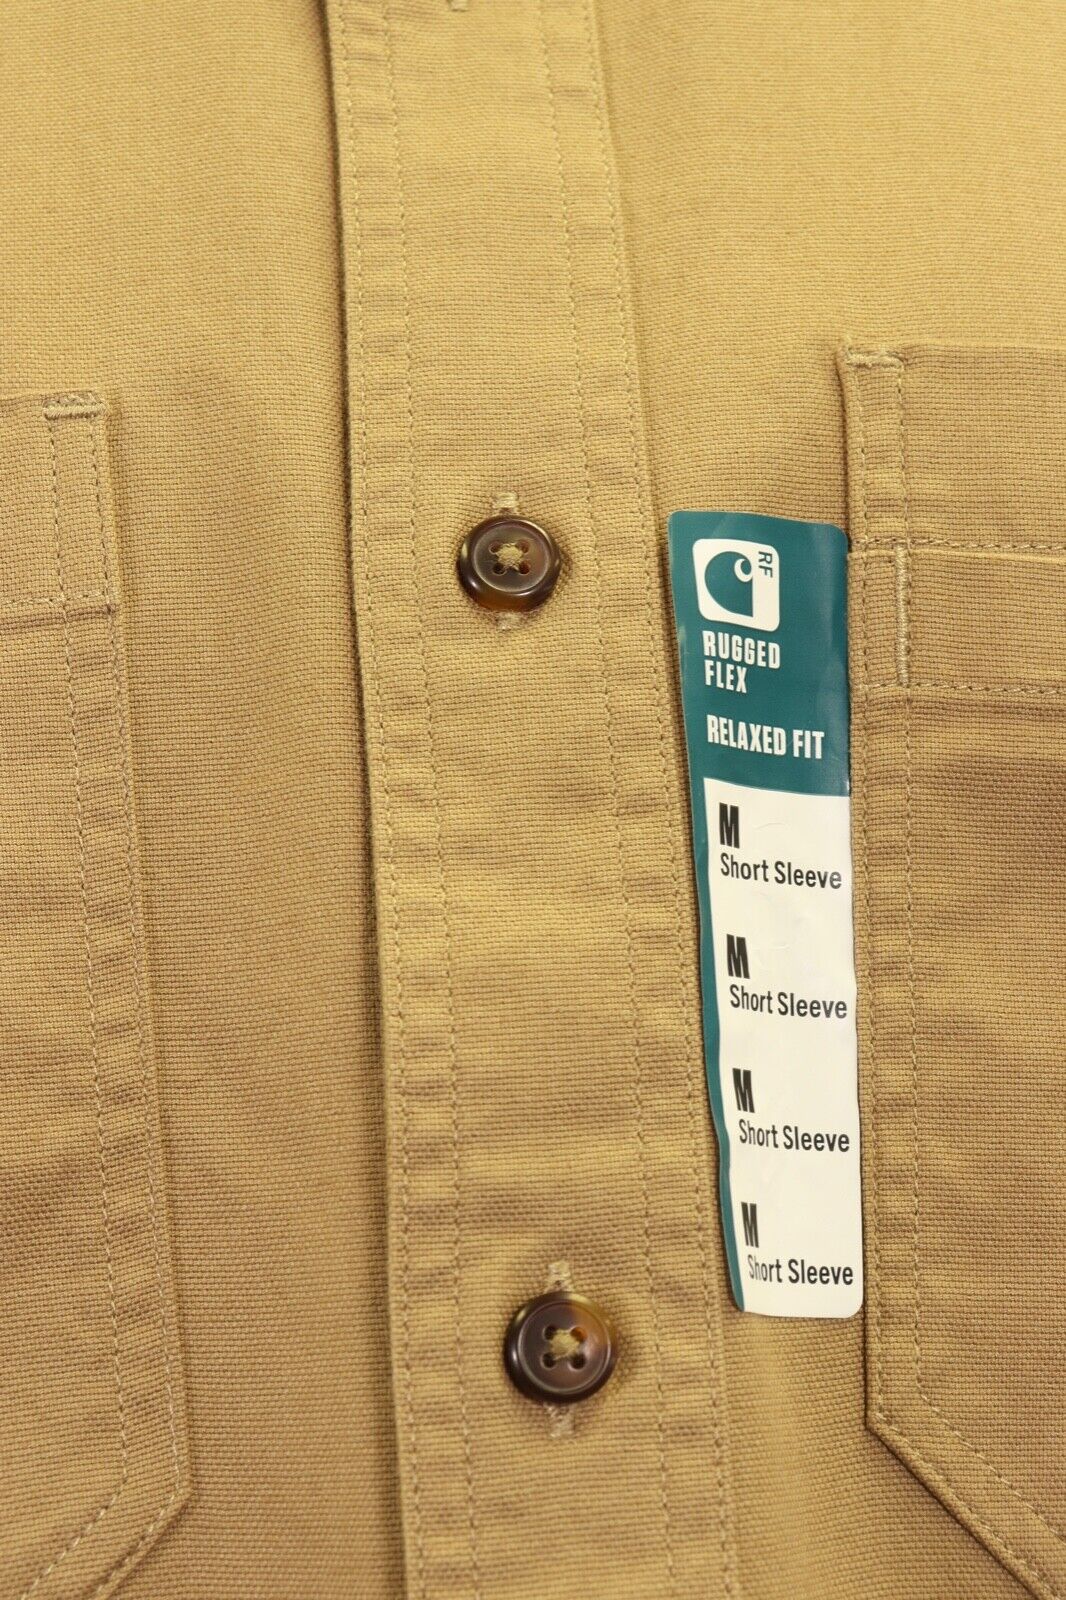 Carhartt Men's Flannel Shirt Rugged Flex Tan Long Sleeve (327)